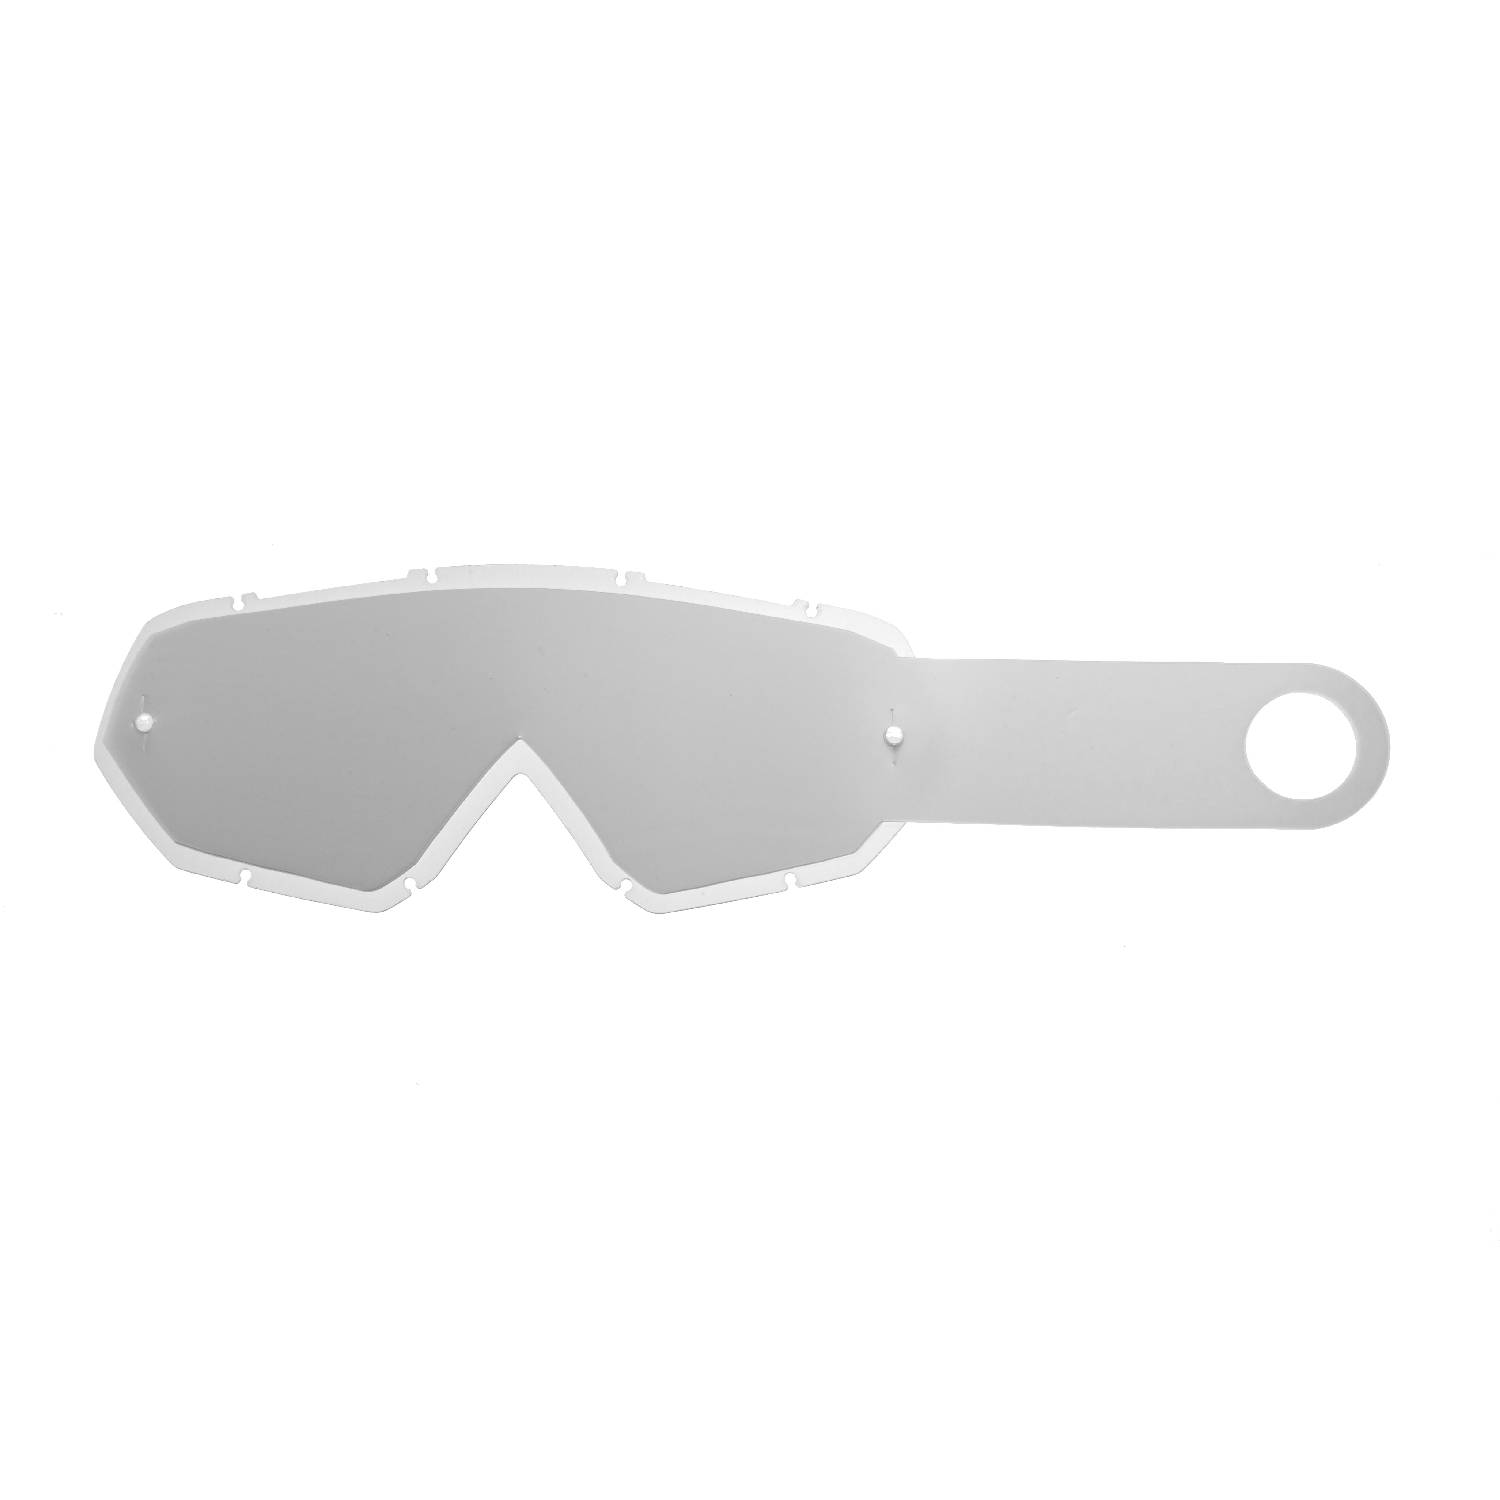 Lente trasparente + 10 Strappi (Combo) compatibile per occhiale/maschera Thor Enemy / Hero